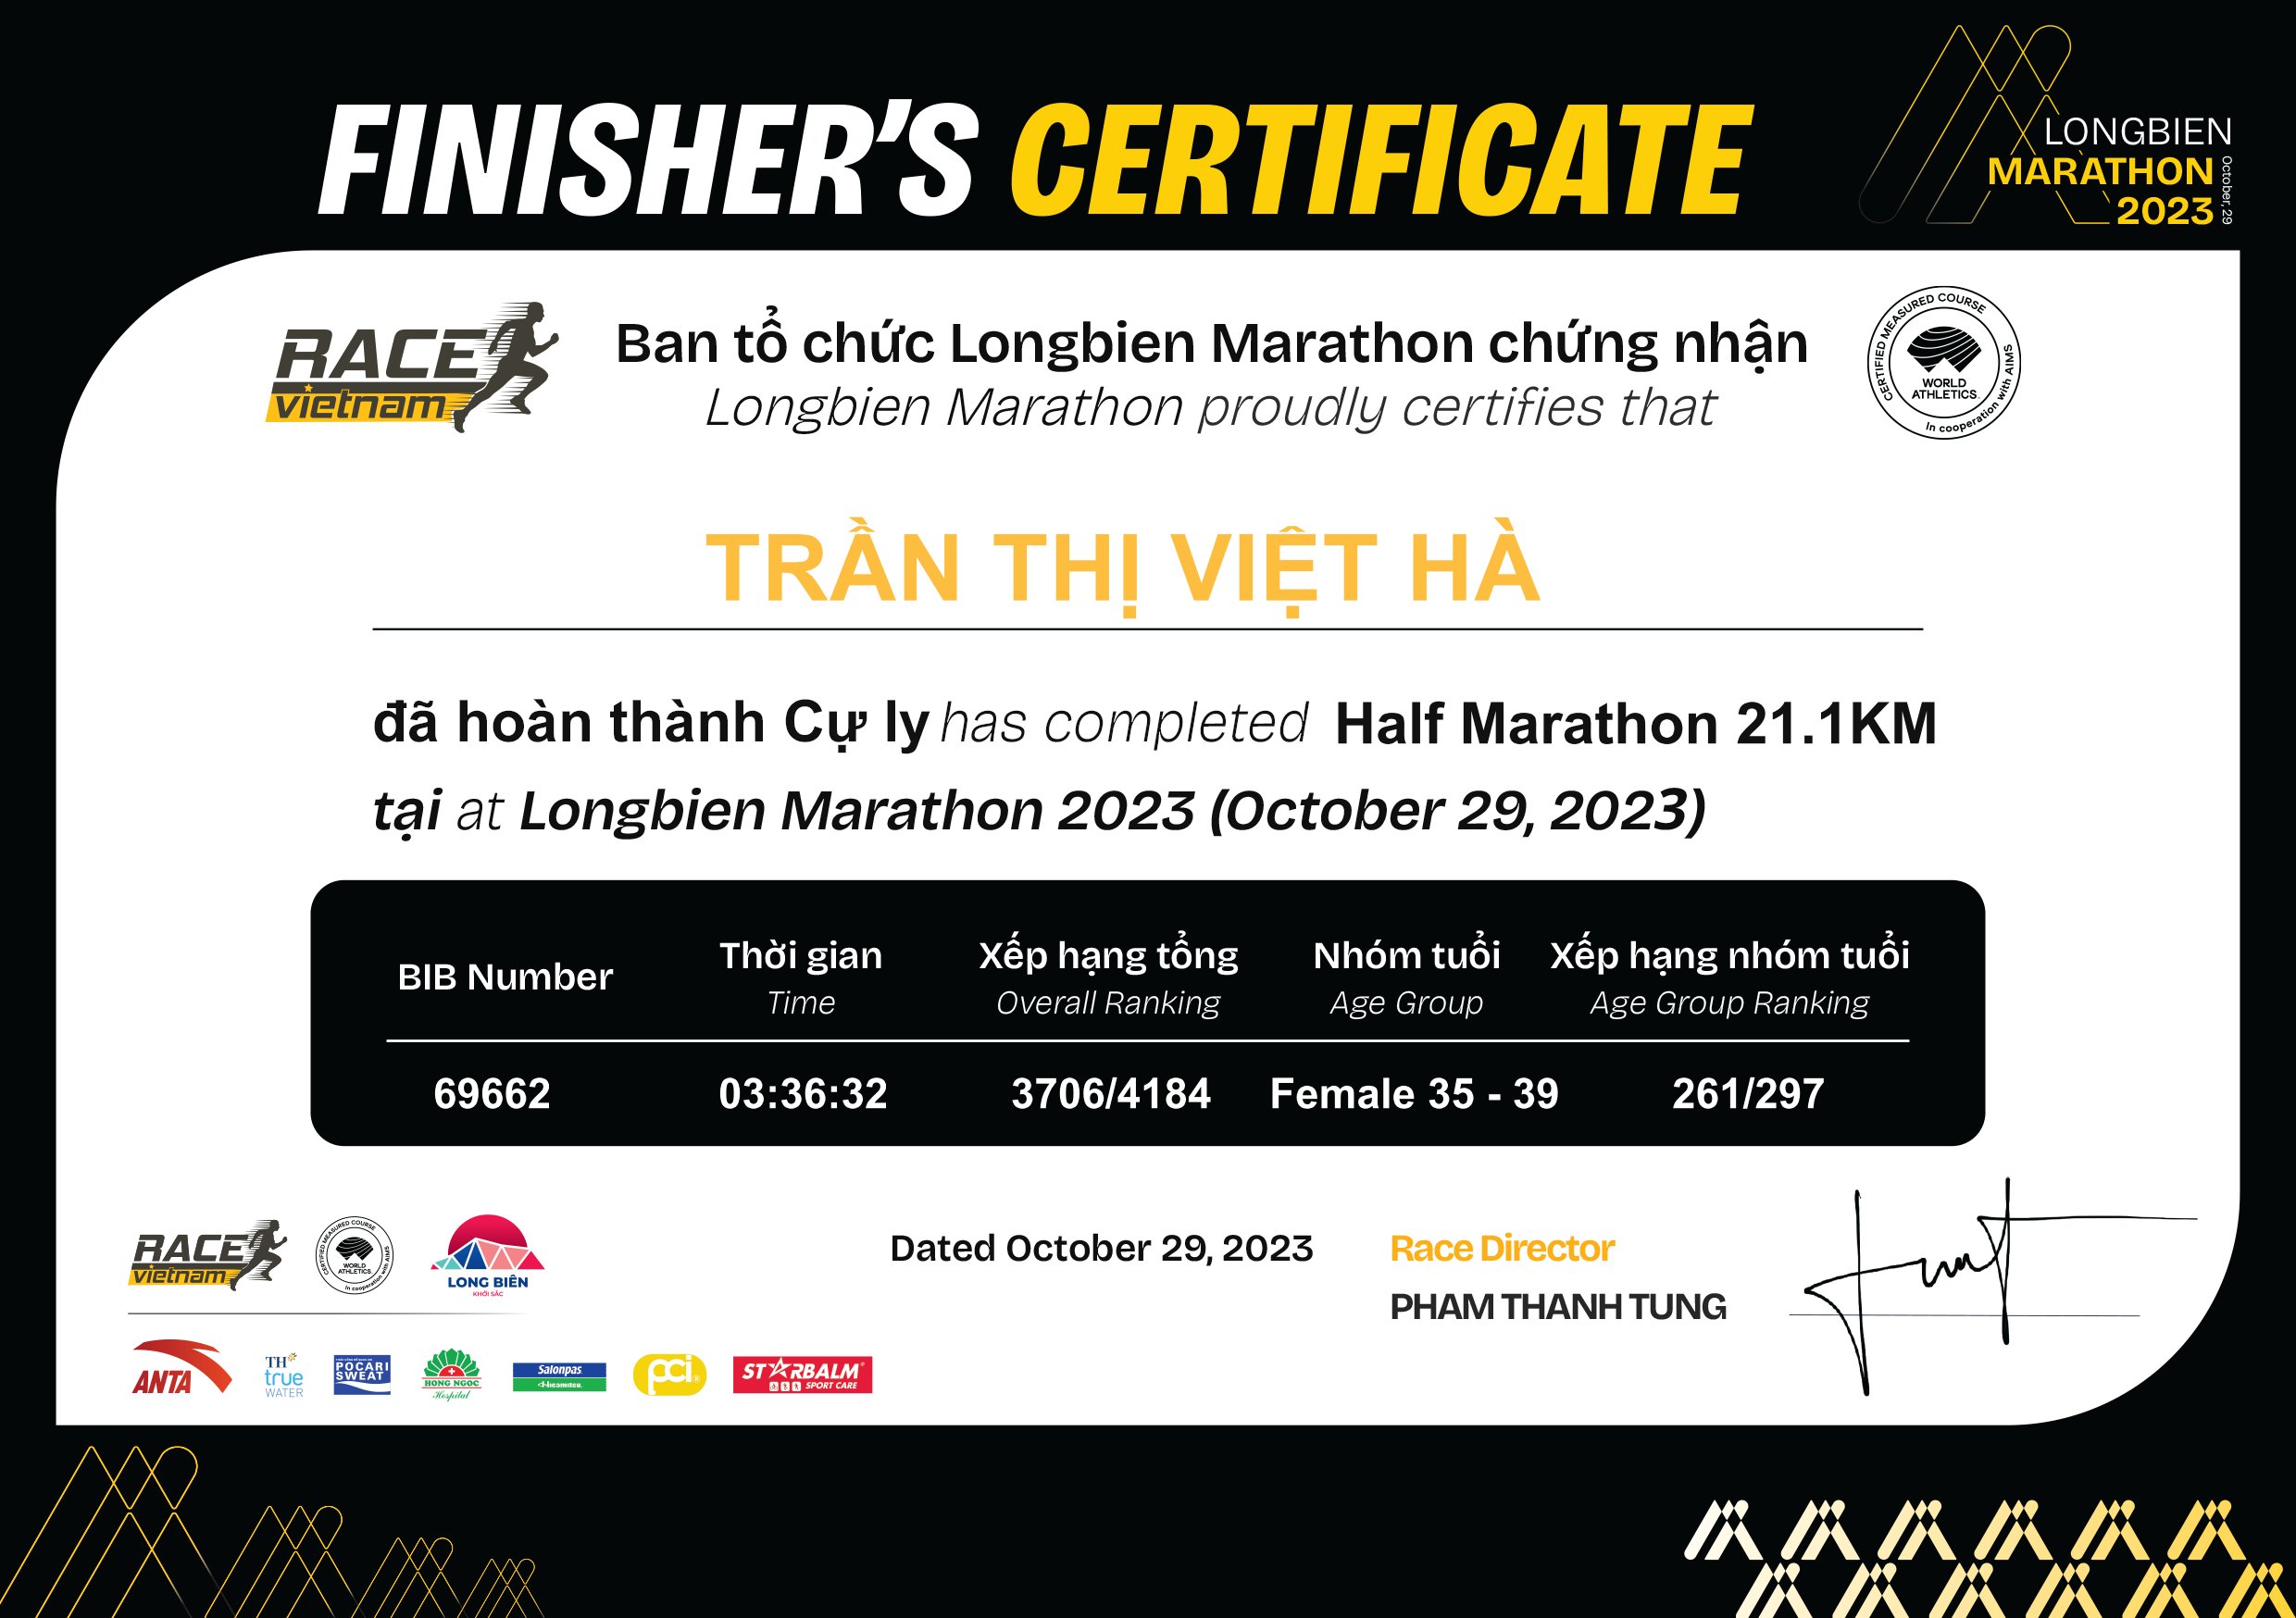 69662 - Trần Thị Việt Hà